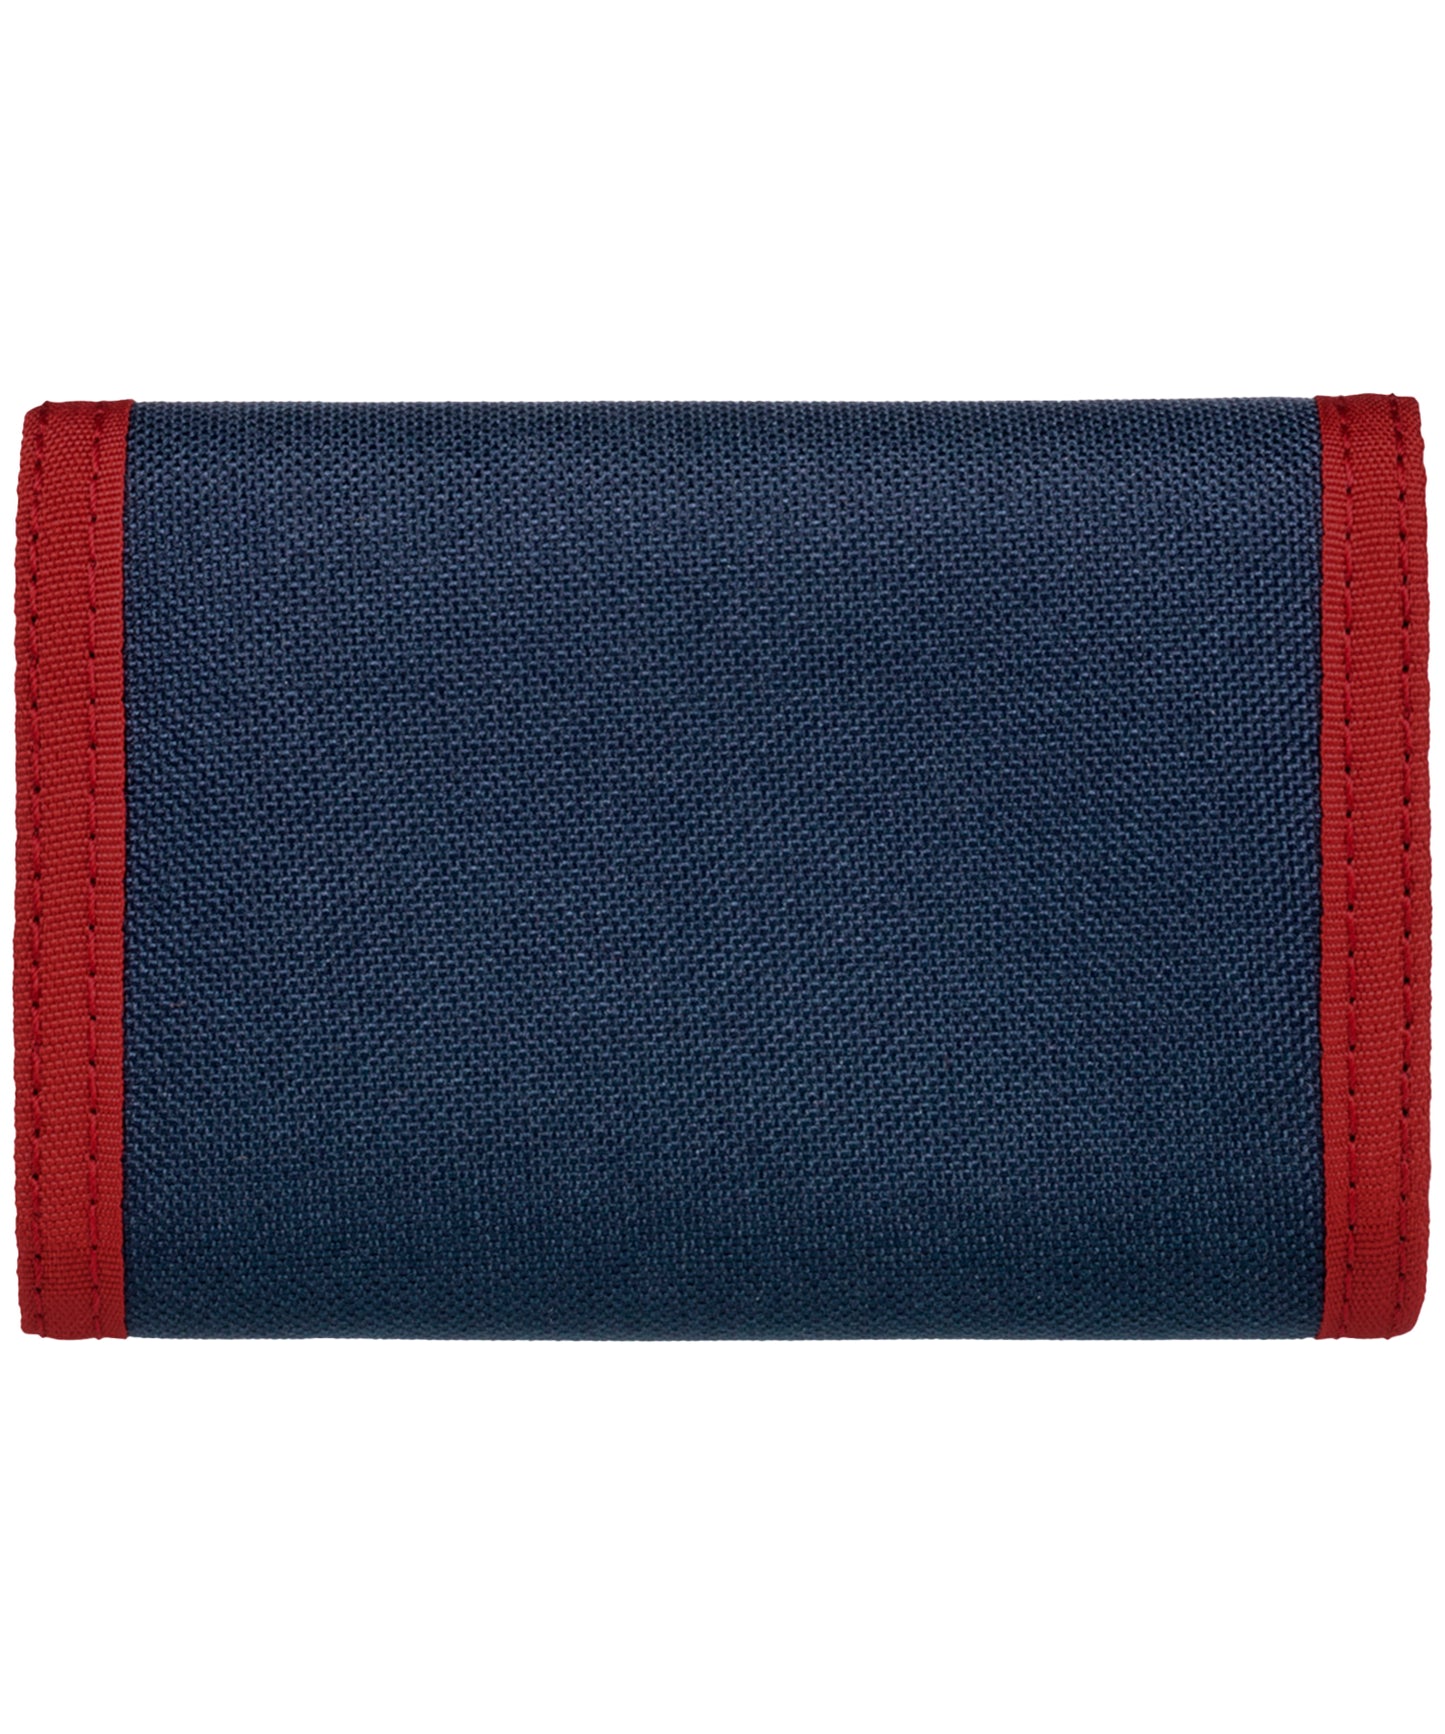 element-cartera tri-fold-army-billetera de tres hojas color-azul-ribete-rojo-loneta de poliéster-logo element en el centro.